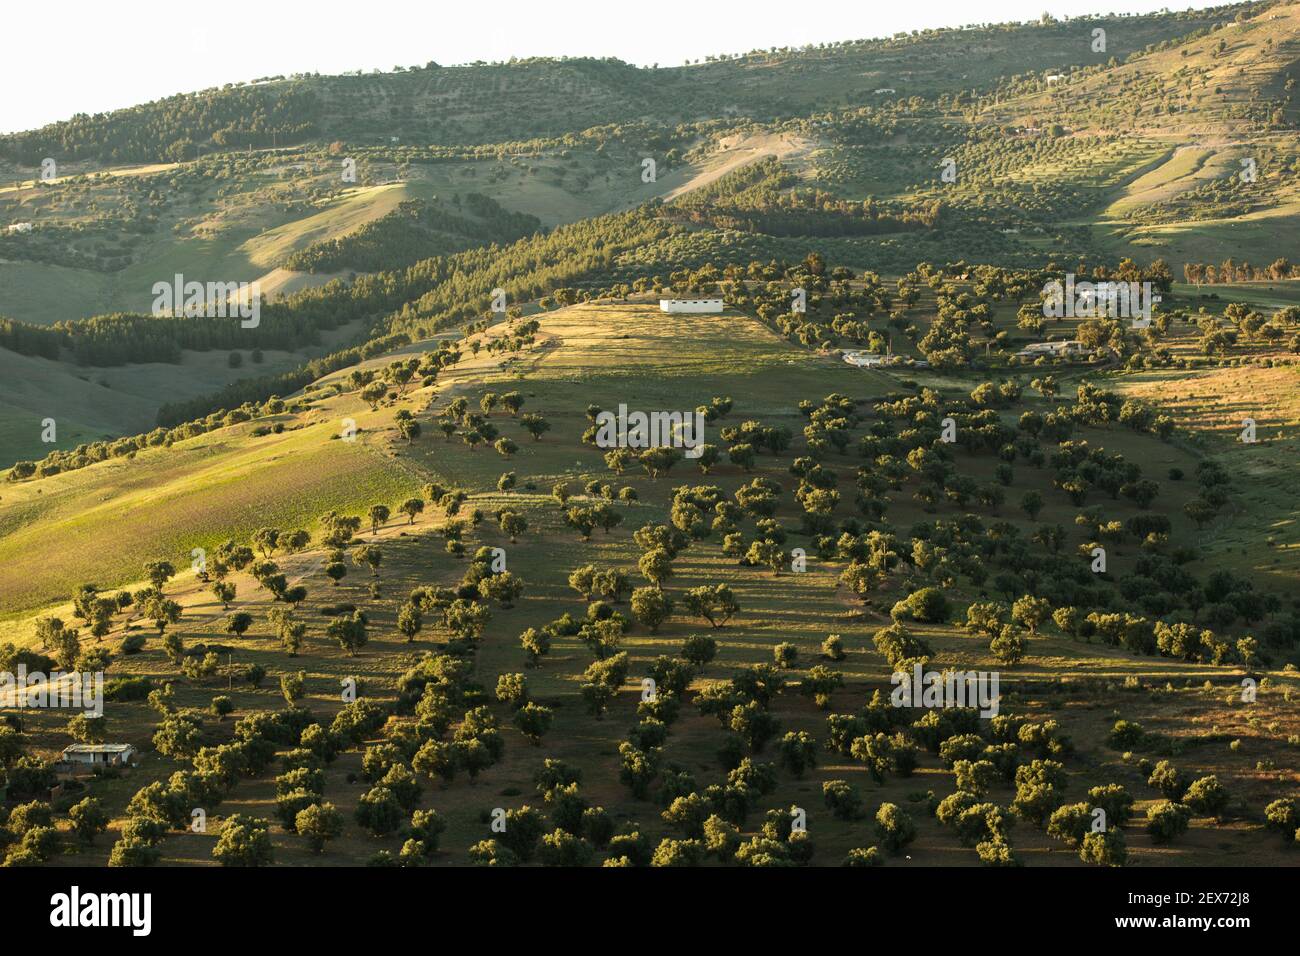 Maroc, Fès, vue sur le paysage des collines verdoyantes entourant la ville Banque D'Images